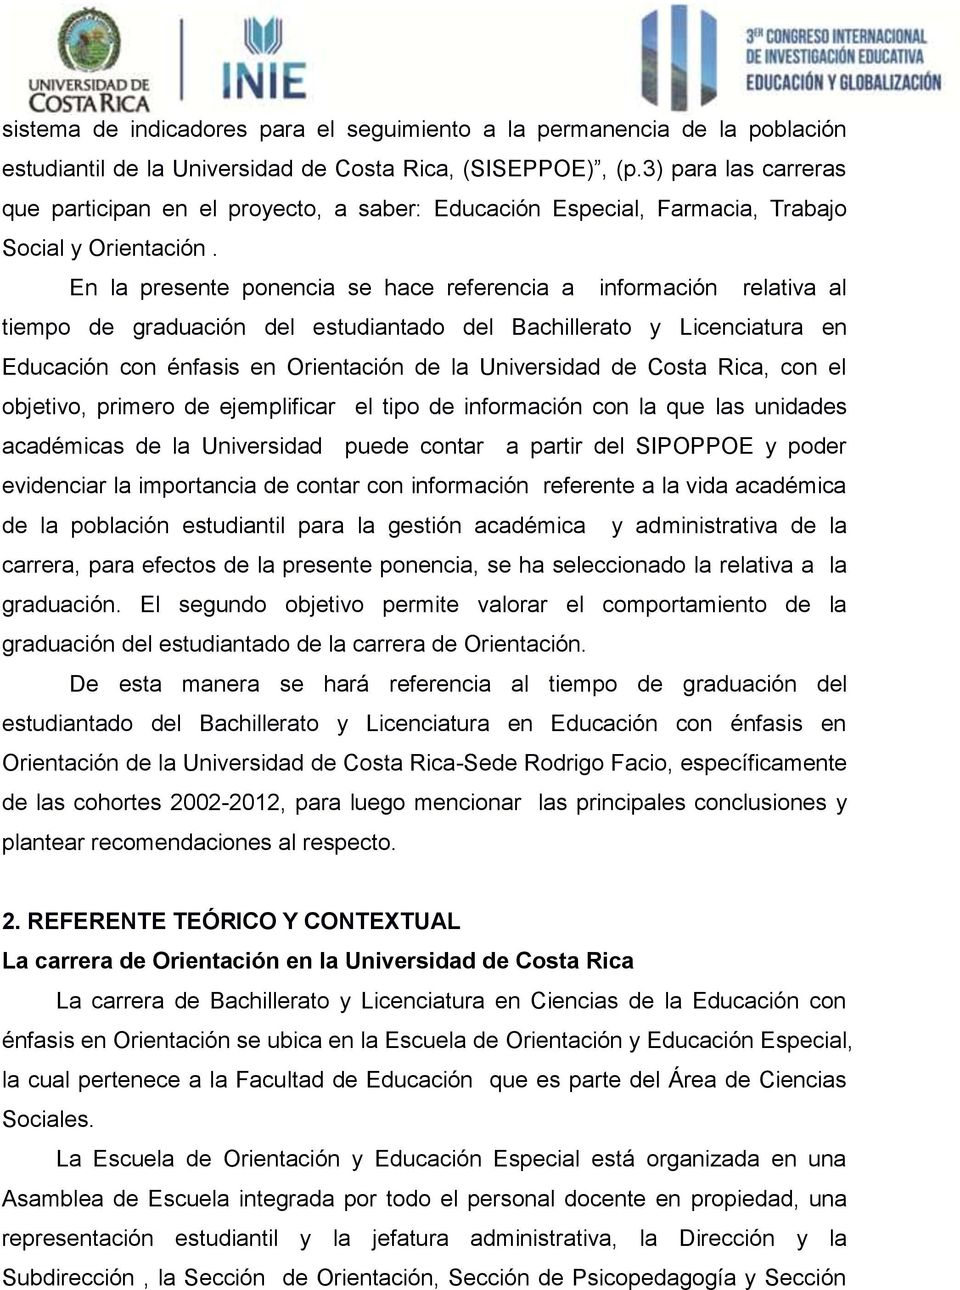 En la presente ponencia se hace referencia a información relativa al tiempo de graduación del estudiantado del Bachillerato y Licenciatura en Educación con énfasis en Orientación de la Universidad de